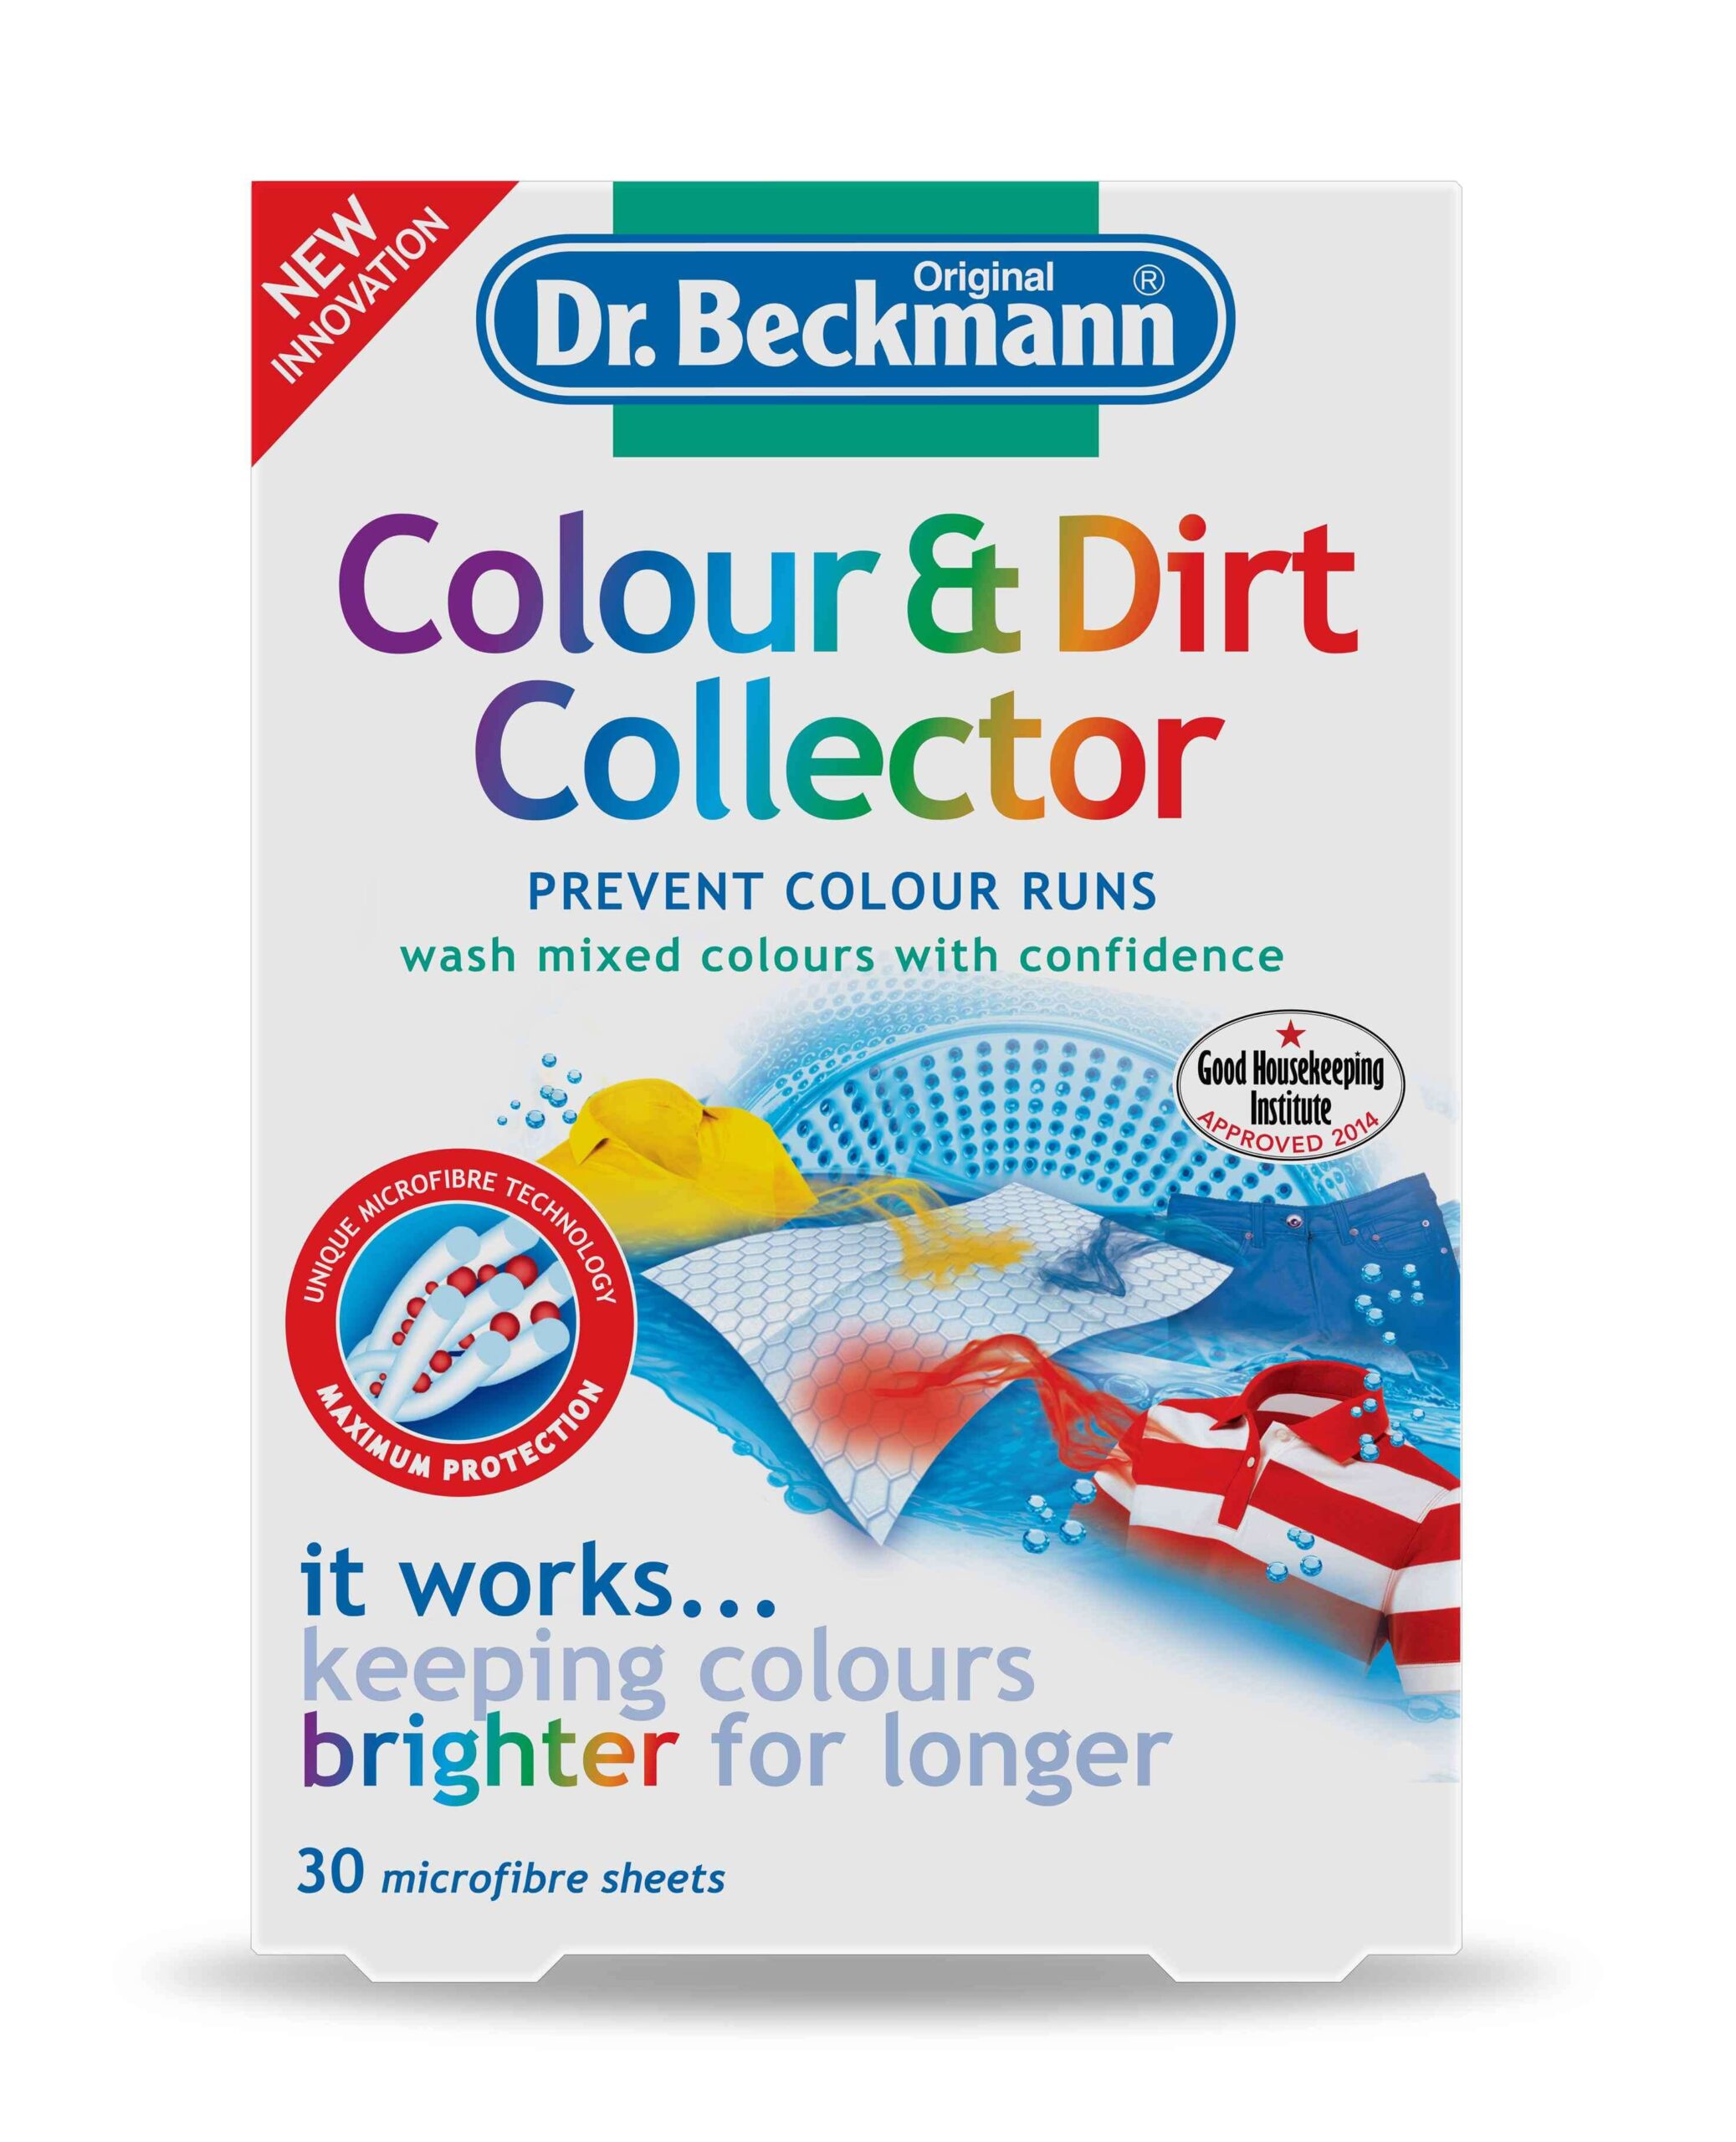 Dr. Beckmann's? Alternative to Shout Colour Catchers